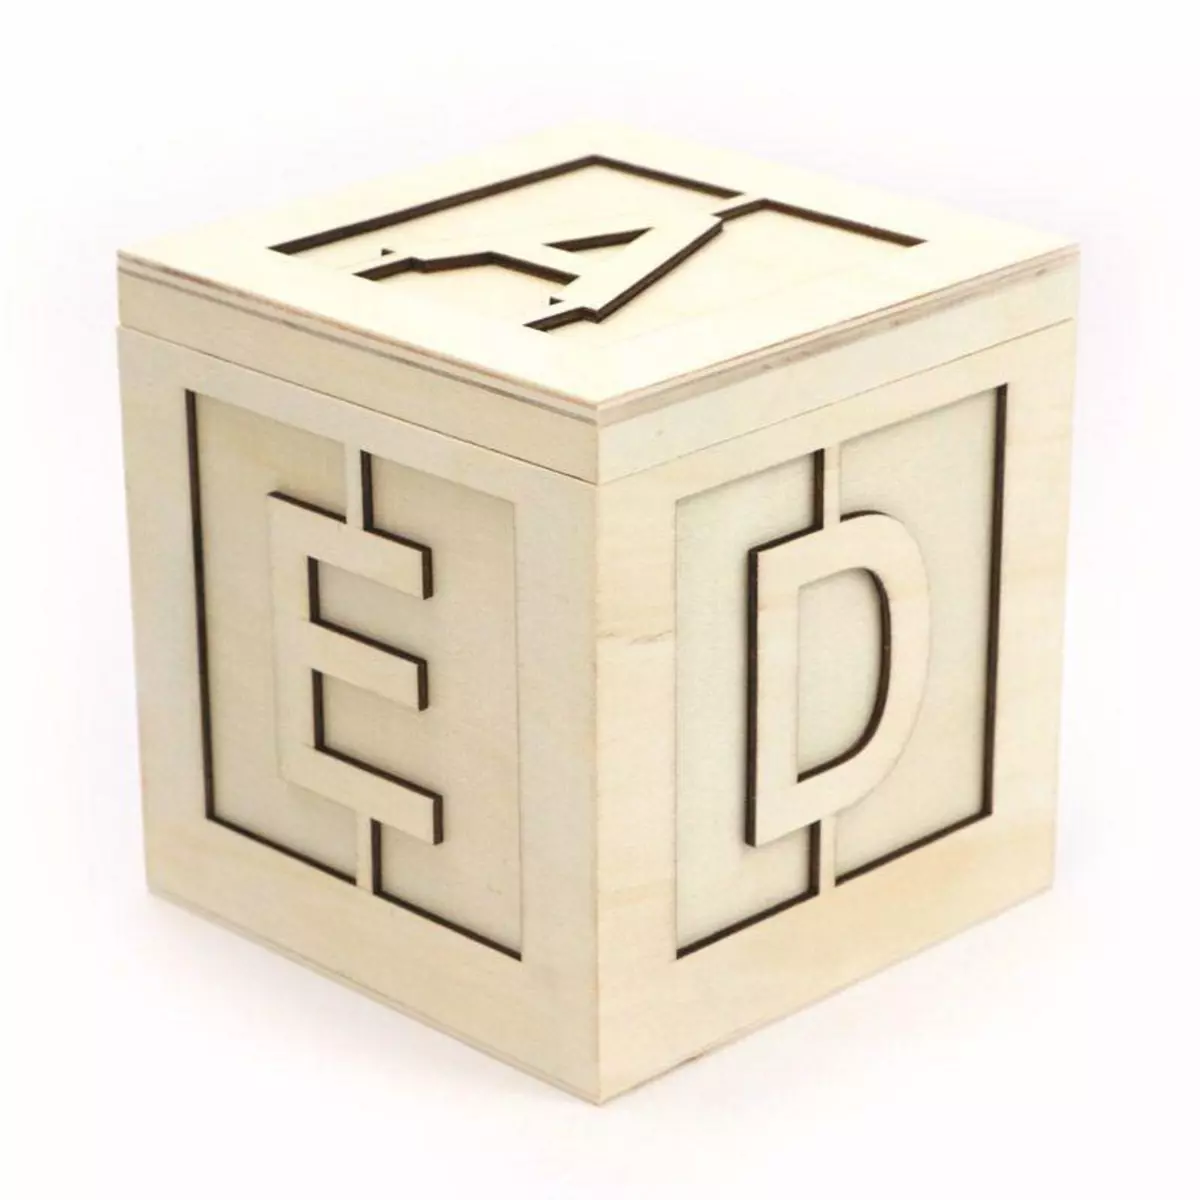 Graine créative Boîte carré en bois - Alphabet - 13 x 13 x 13 cm